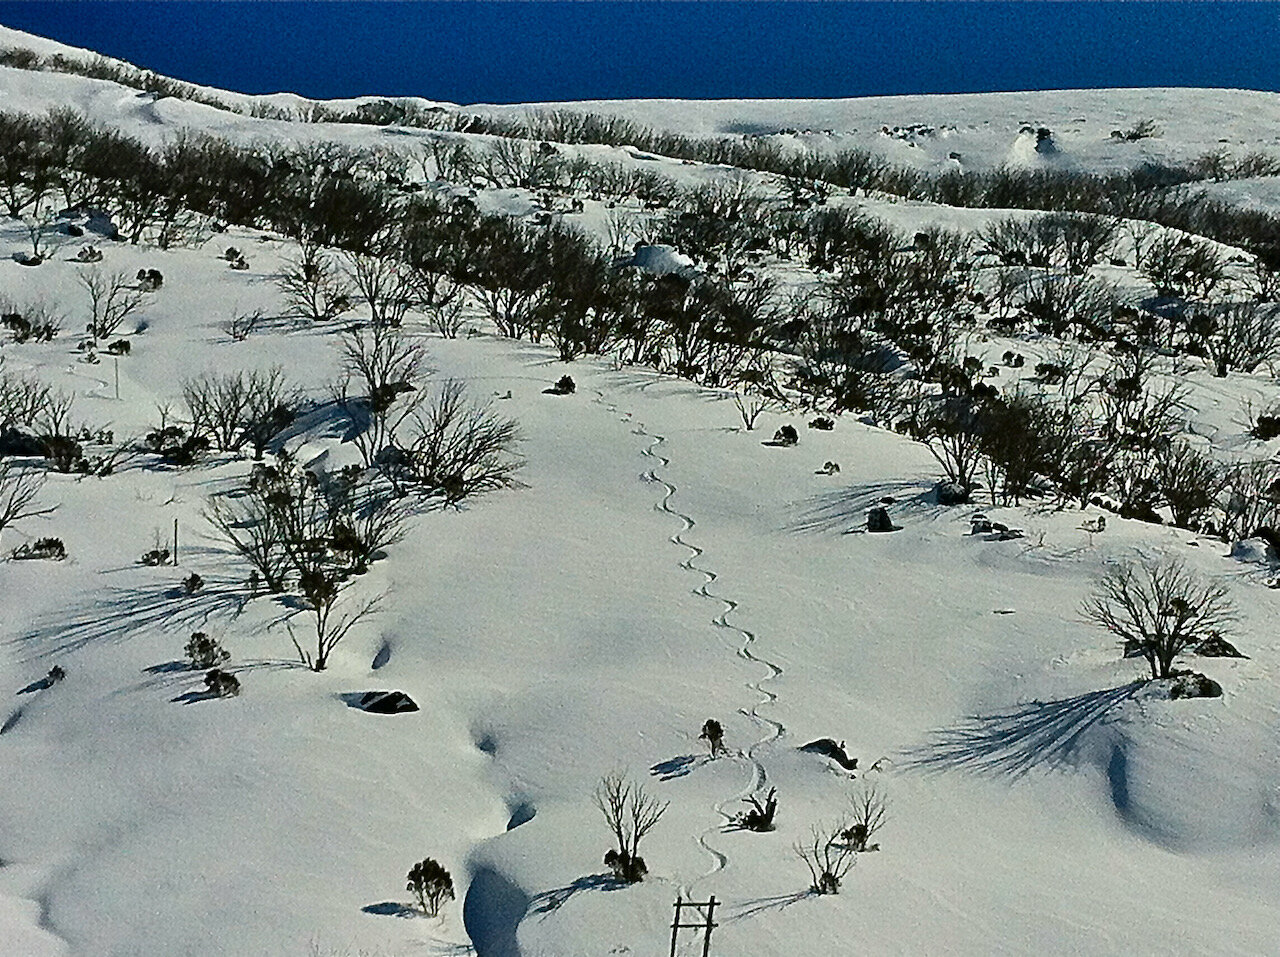  Backcountry tracks, near Gill’s Knobs, Main Range, NSW. 